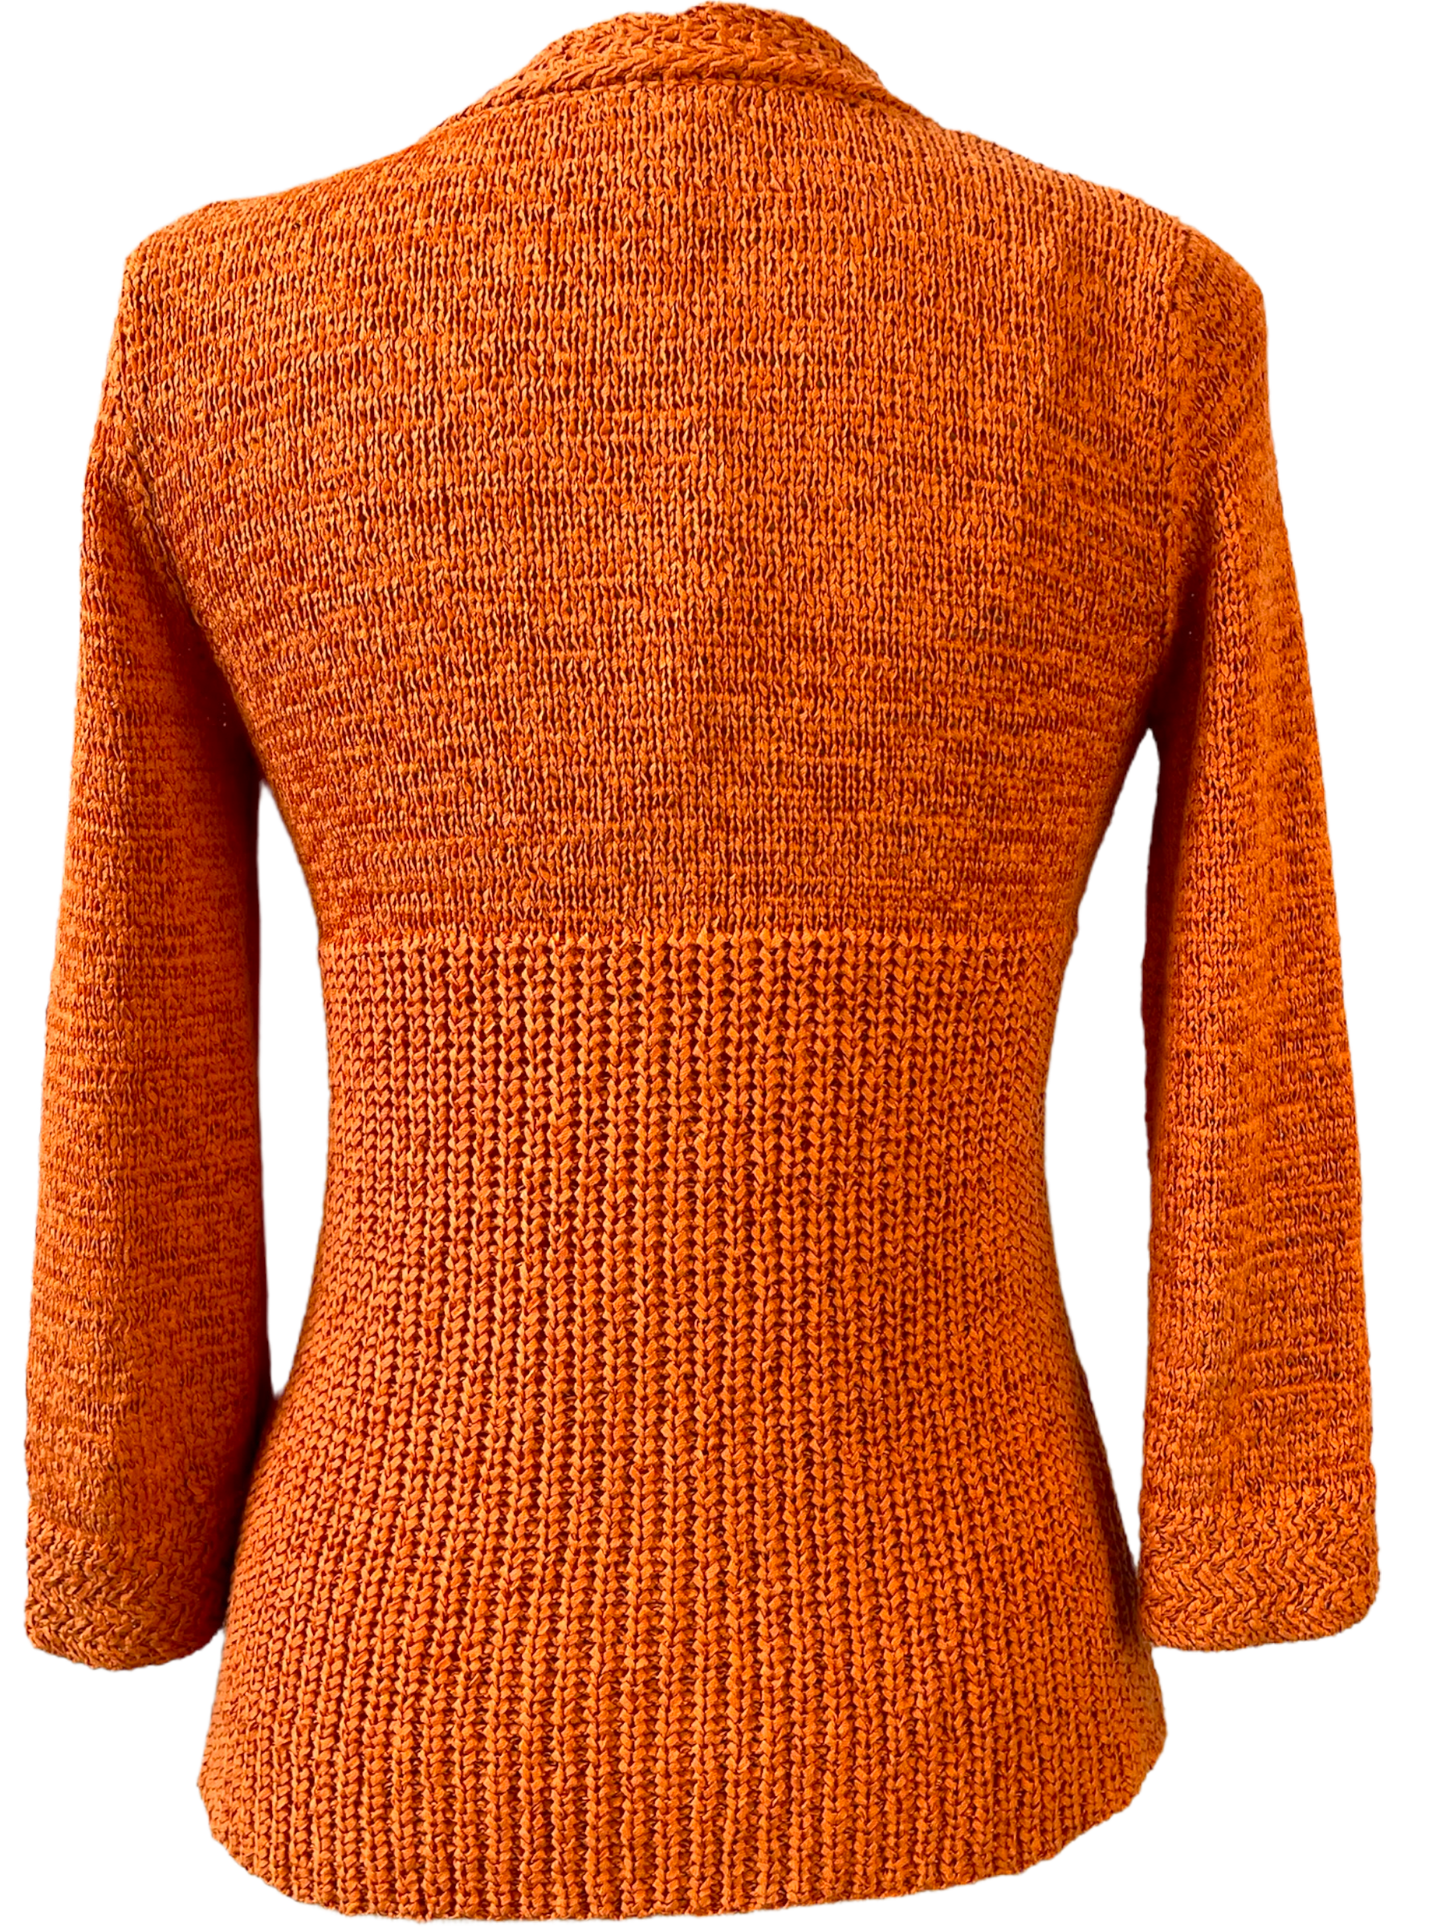 1990s Pumpkin Knit Cardigan